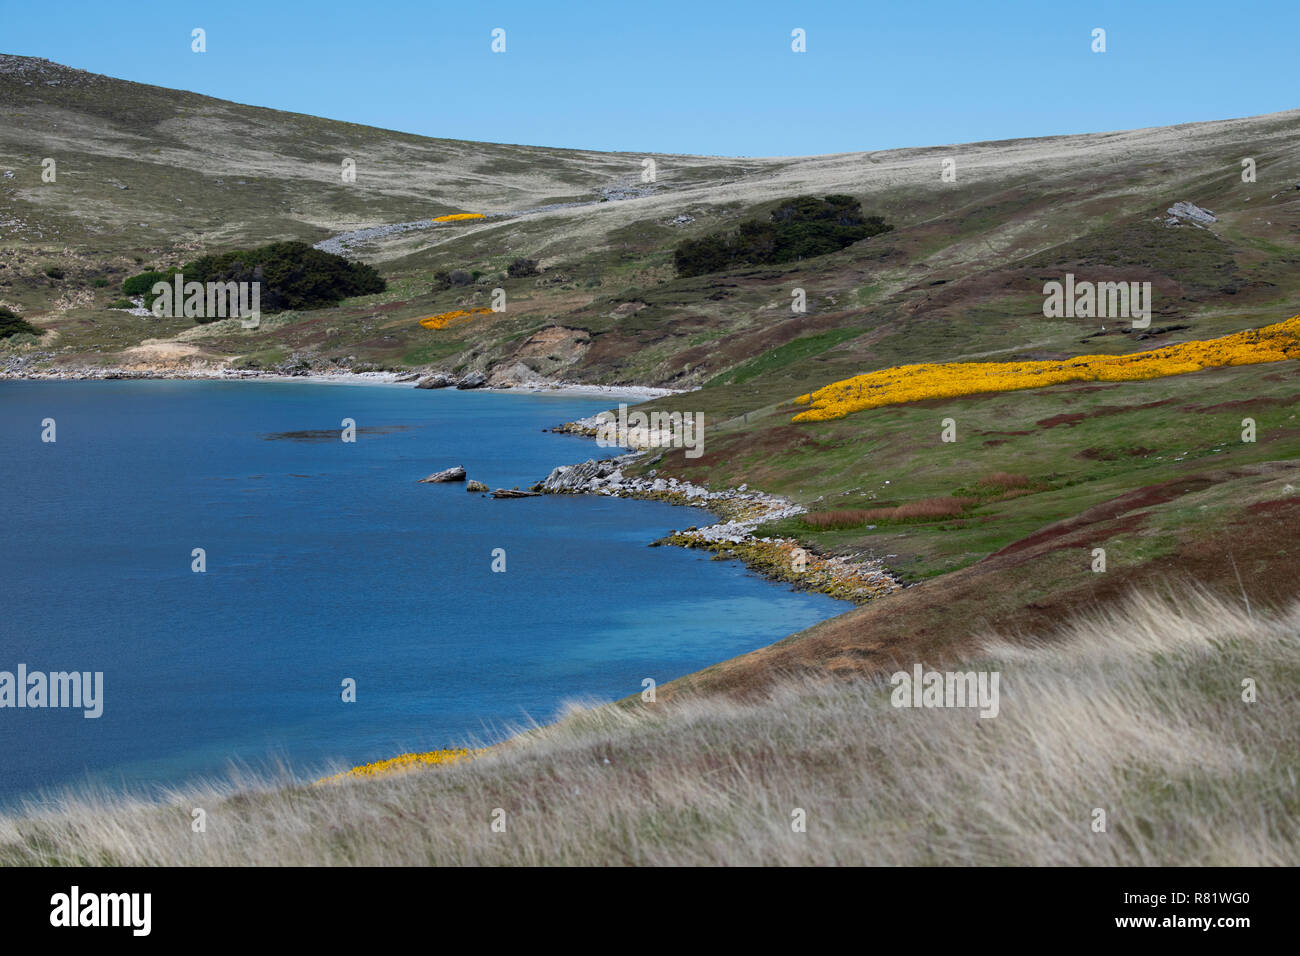 Vereinigtes Königreich, Falkland Inseln, West Falkland, West Point Island. Der Blick auf die Landschaft mit blühenden gelben Ginster. Stockfoto